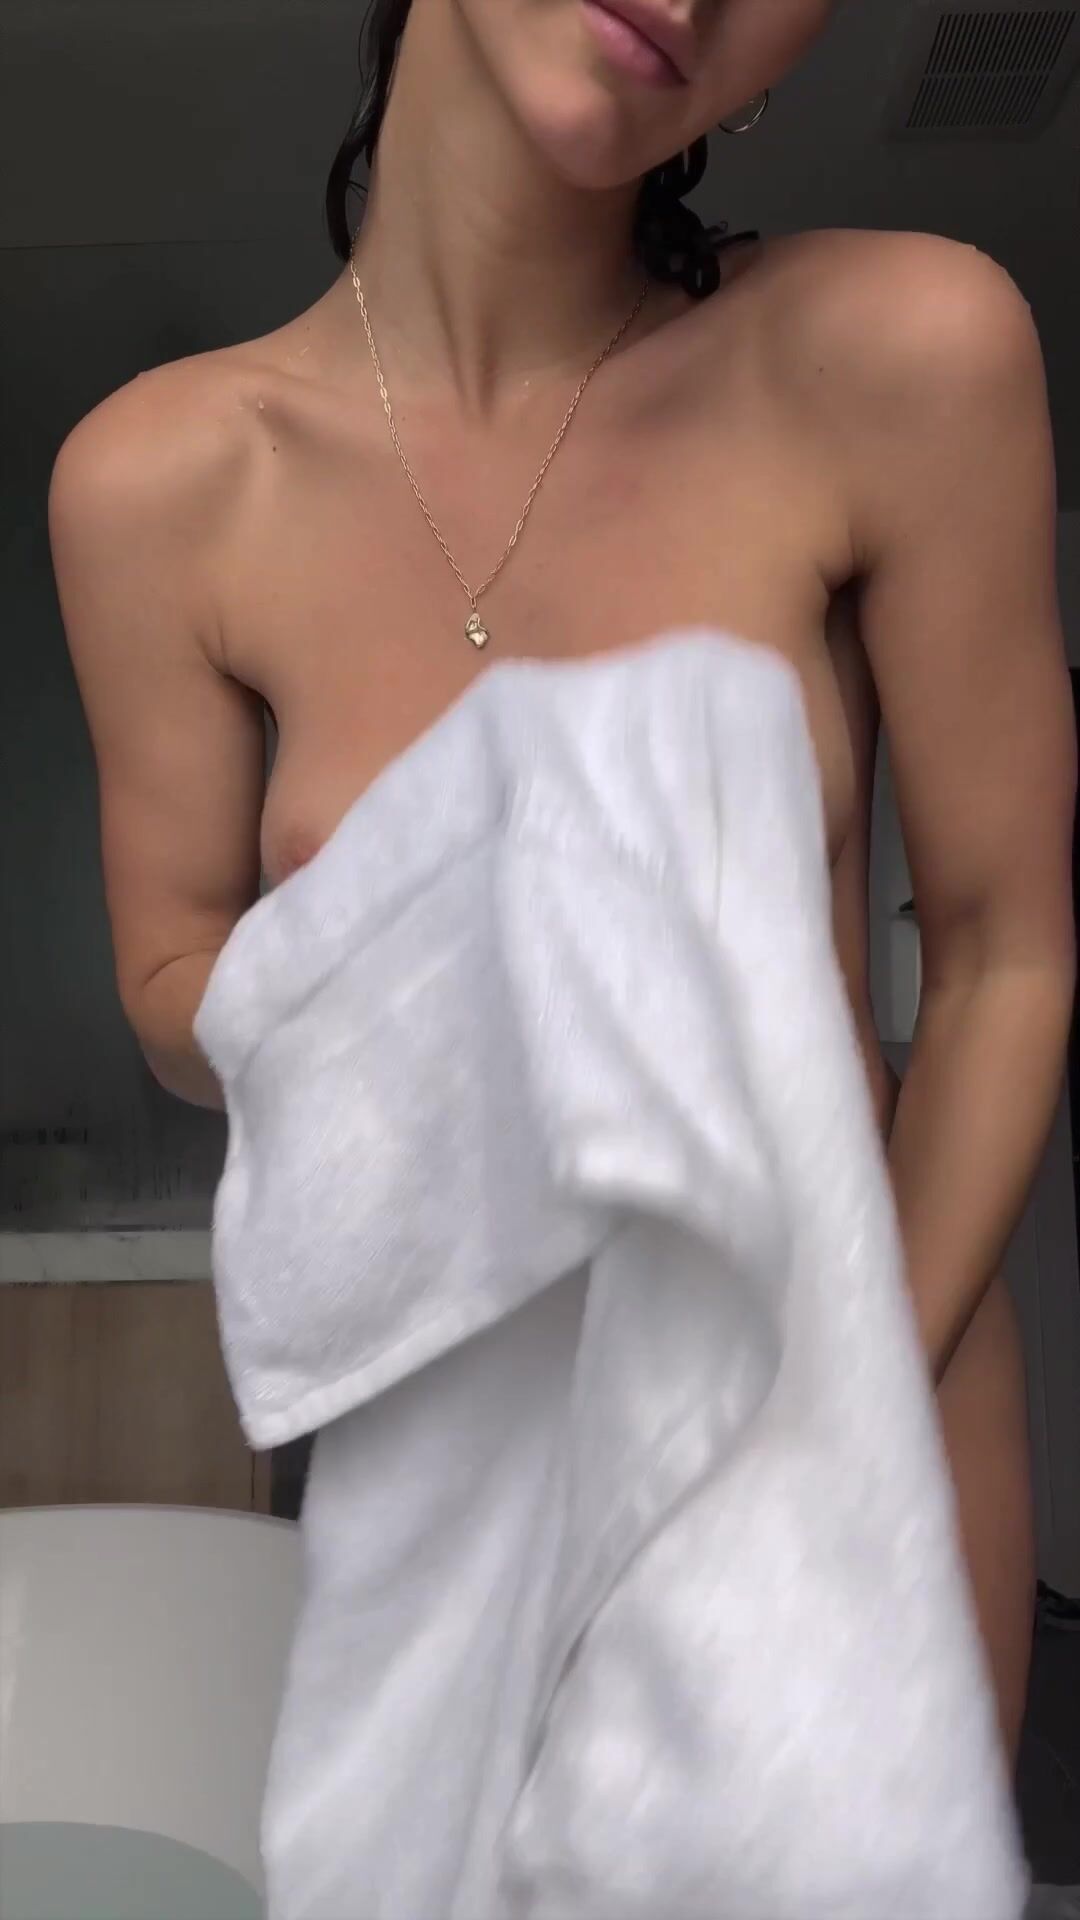 Rachel shower